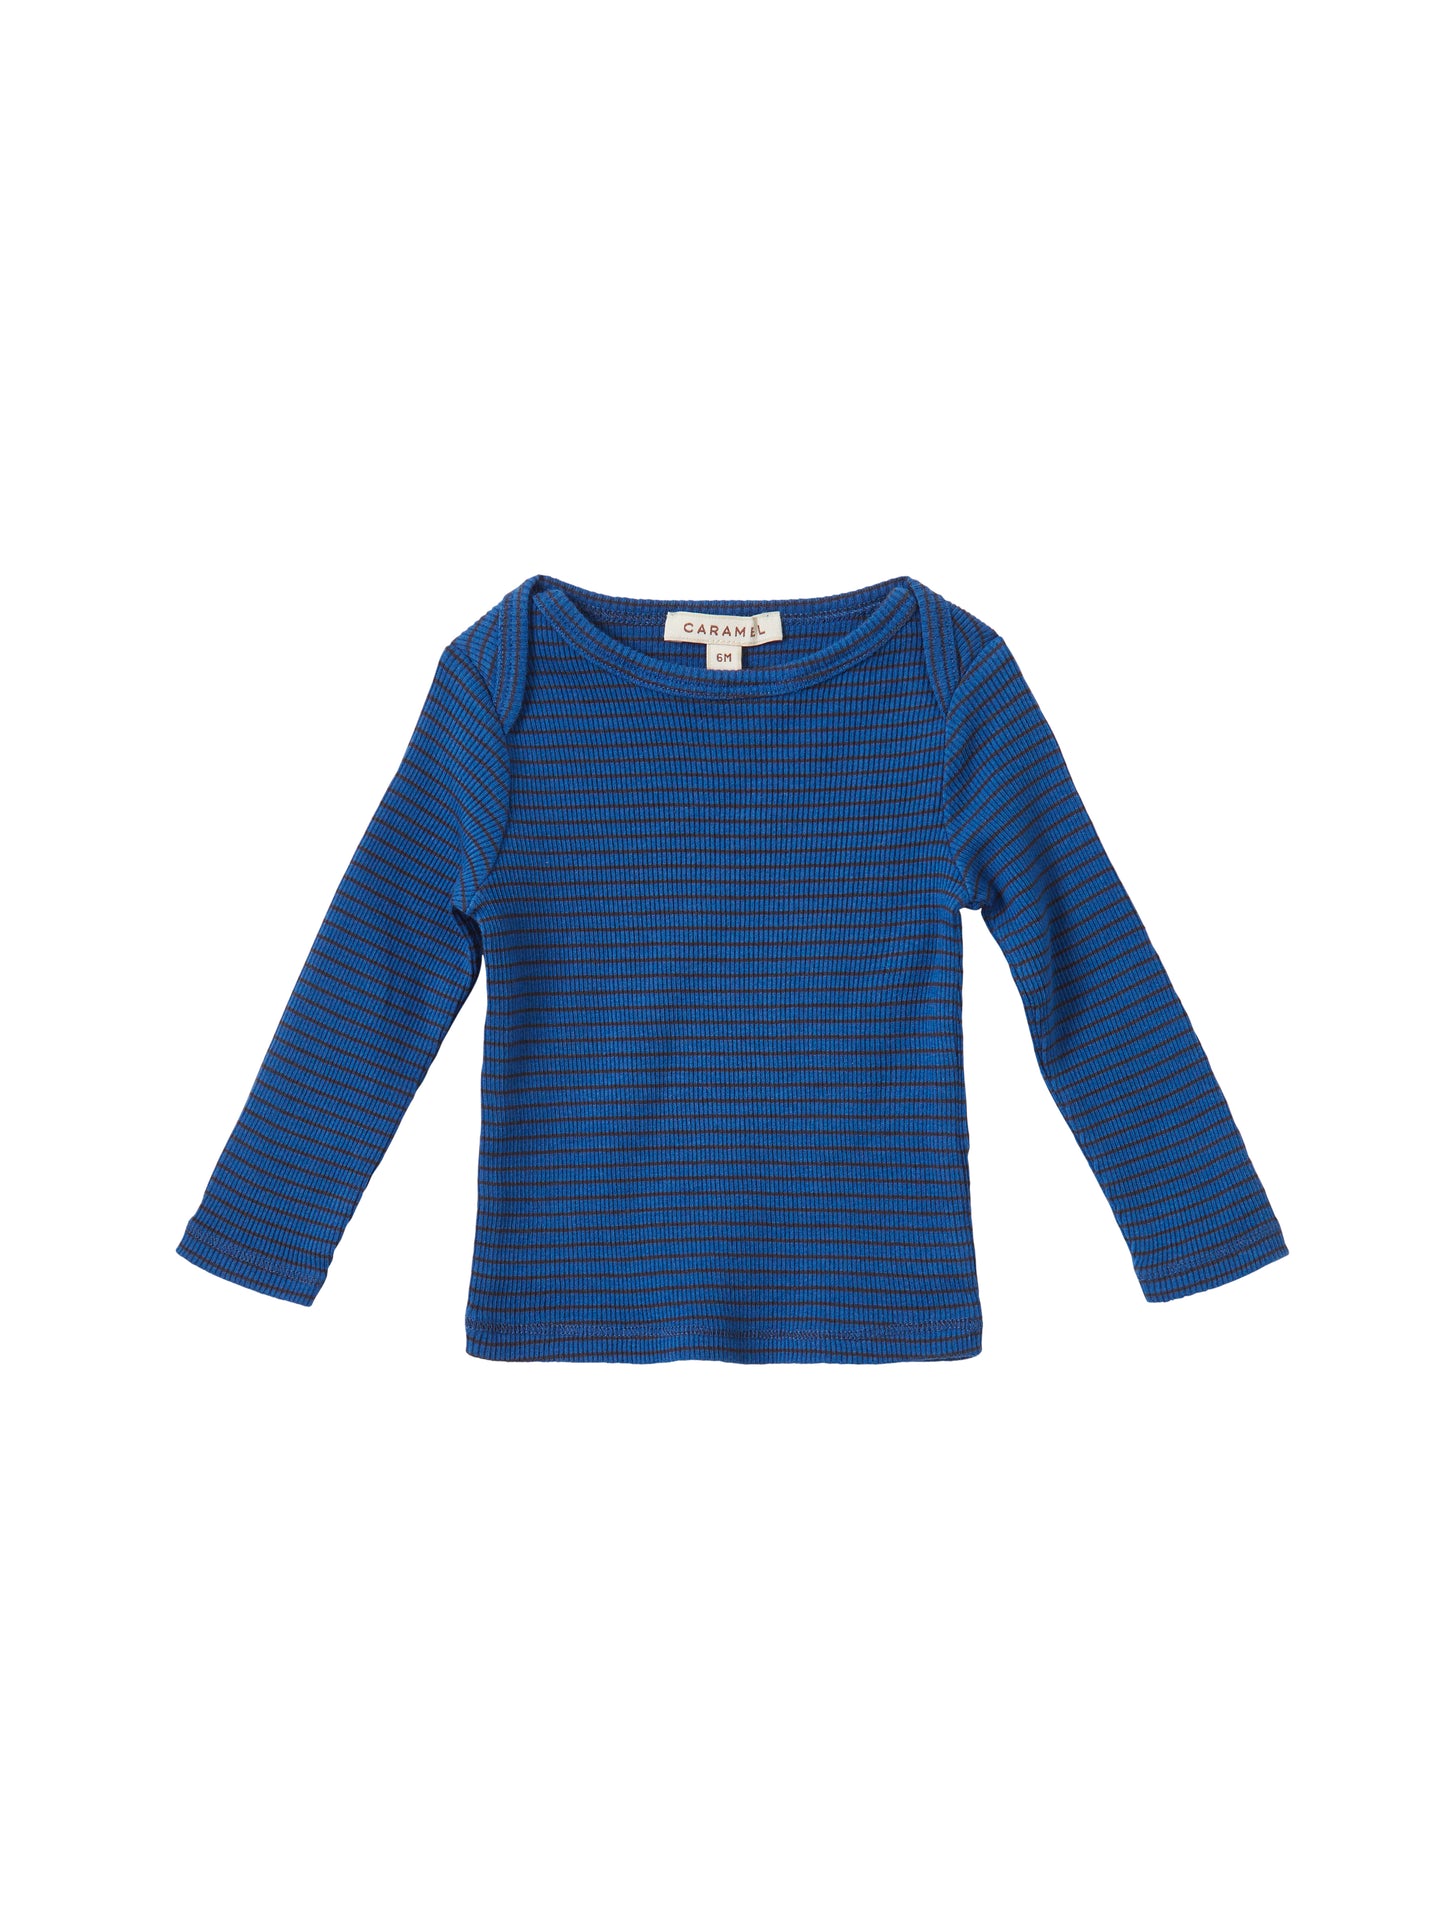 Caramel - Kishon T-shirt - Charcoal/electric blue stripe